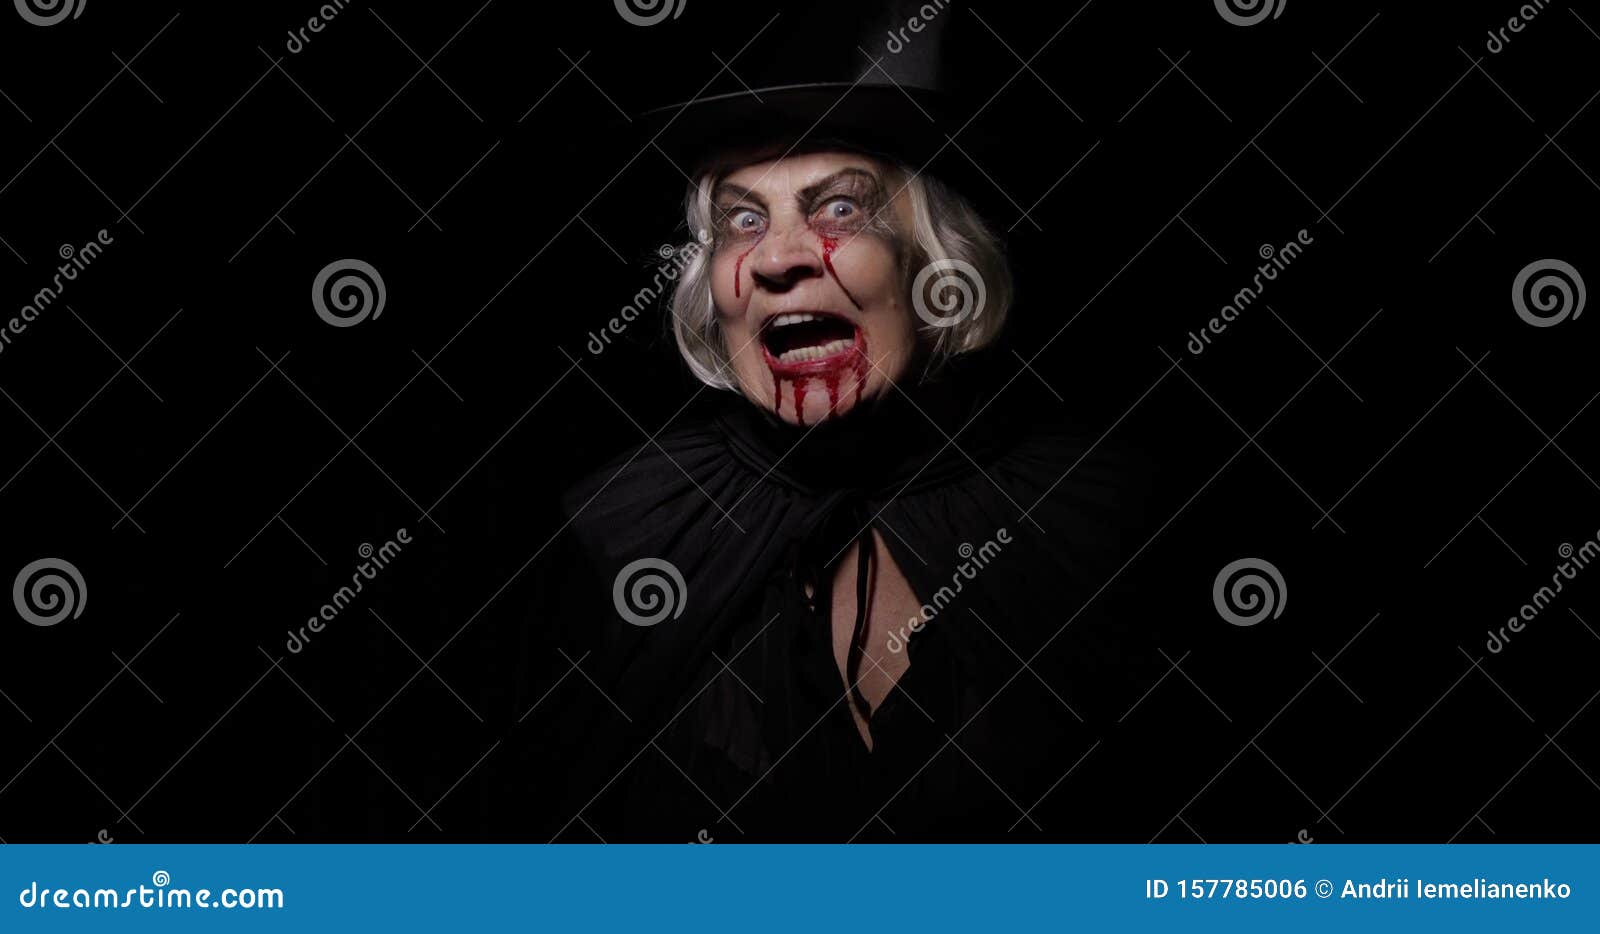 Maquiagem De Bruxas Antigas Retrato De Mulher Idosa Com Sangue No Rosto  Filme - Vídeo de sangrento, forma: 157789596